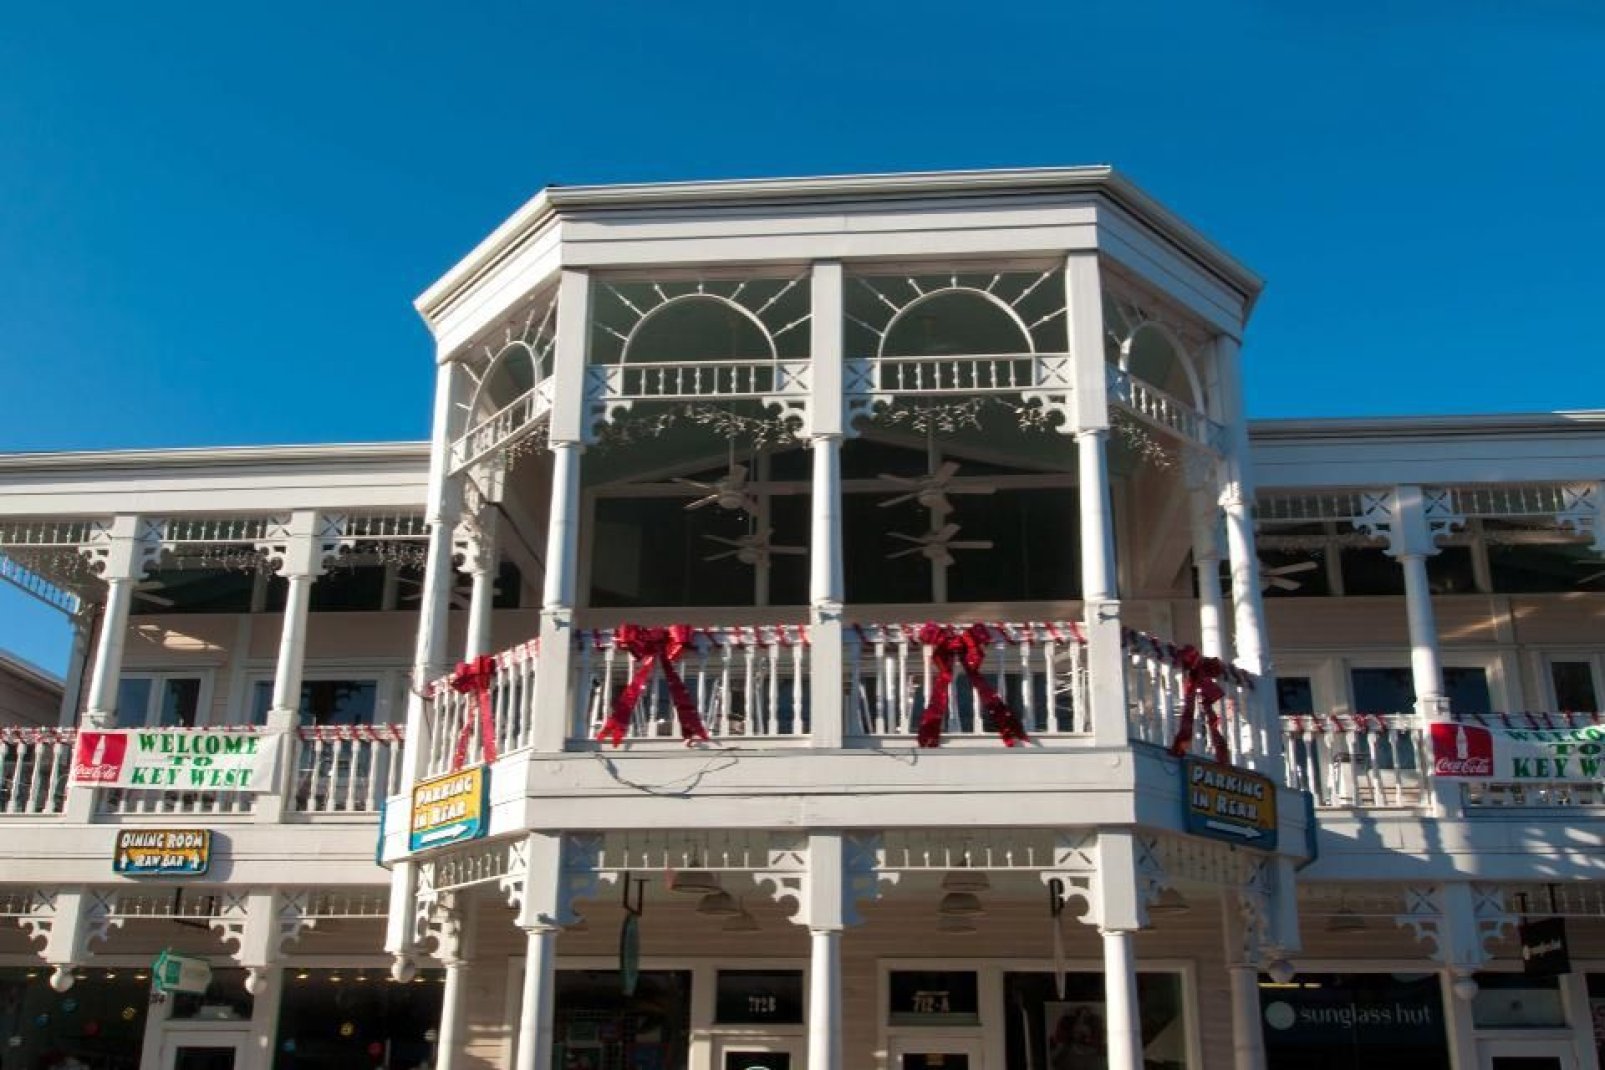 Duval Sreet ist eine berühmte Geschäftsstraße in Key West. In gewissen Nächten findet hier ein Karneval statt, der bis zum Morgengrauen dauert.